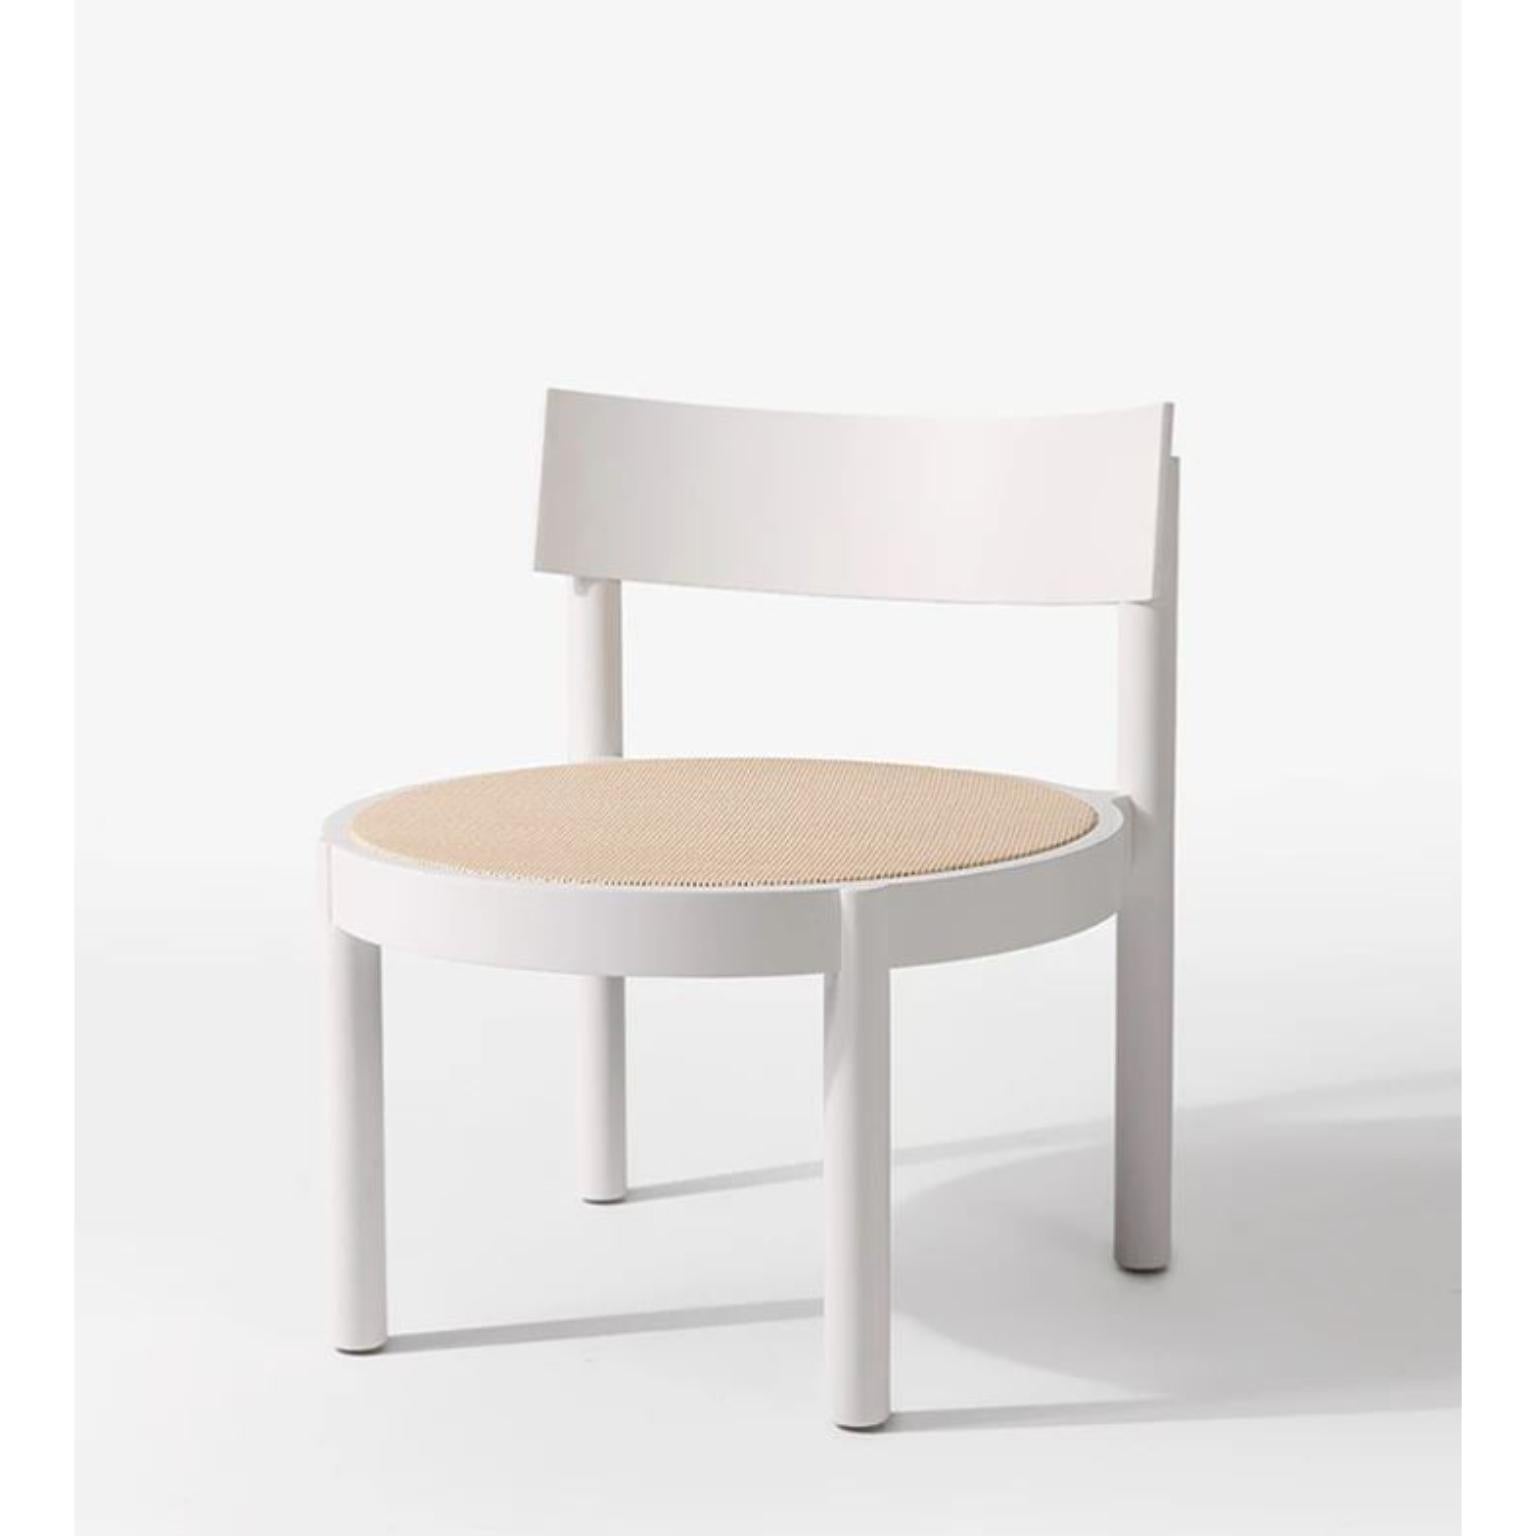 Weißer Gravatá Sessel von Wentz
Abmessungen: T 64 x B 60 x H 67 cm
MATERIALIEN: Tauari-Holz, Rohr/Polsterung.
Gewicht: 6,6kg / 14,5 lbs

Die Gravatá-Serie ist eine Synthese unserer Vision von funktionaler und visueller Einfachheit der Möbel. Mit